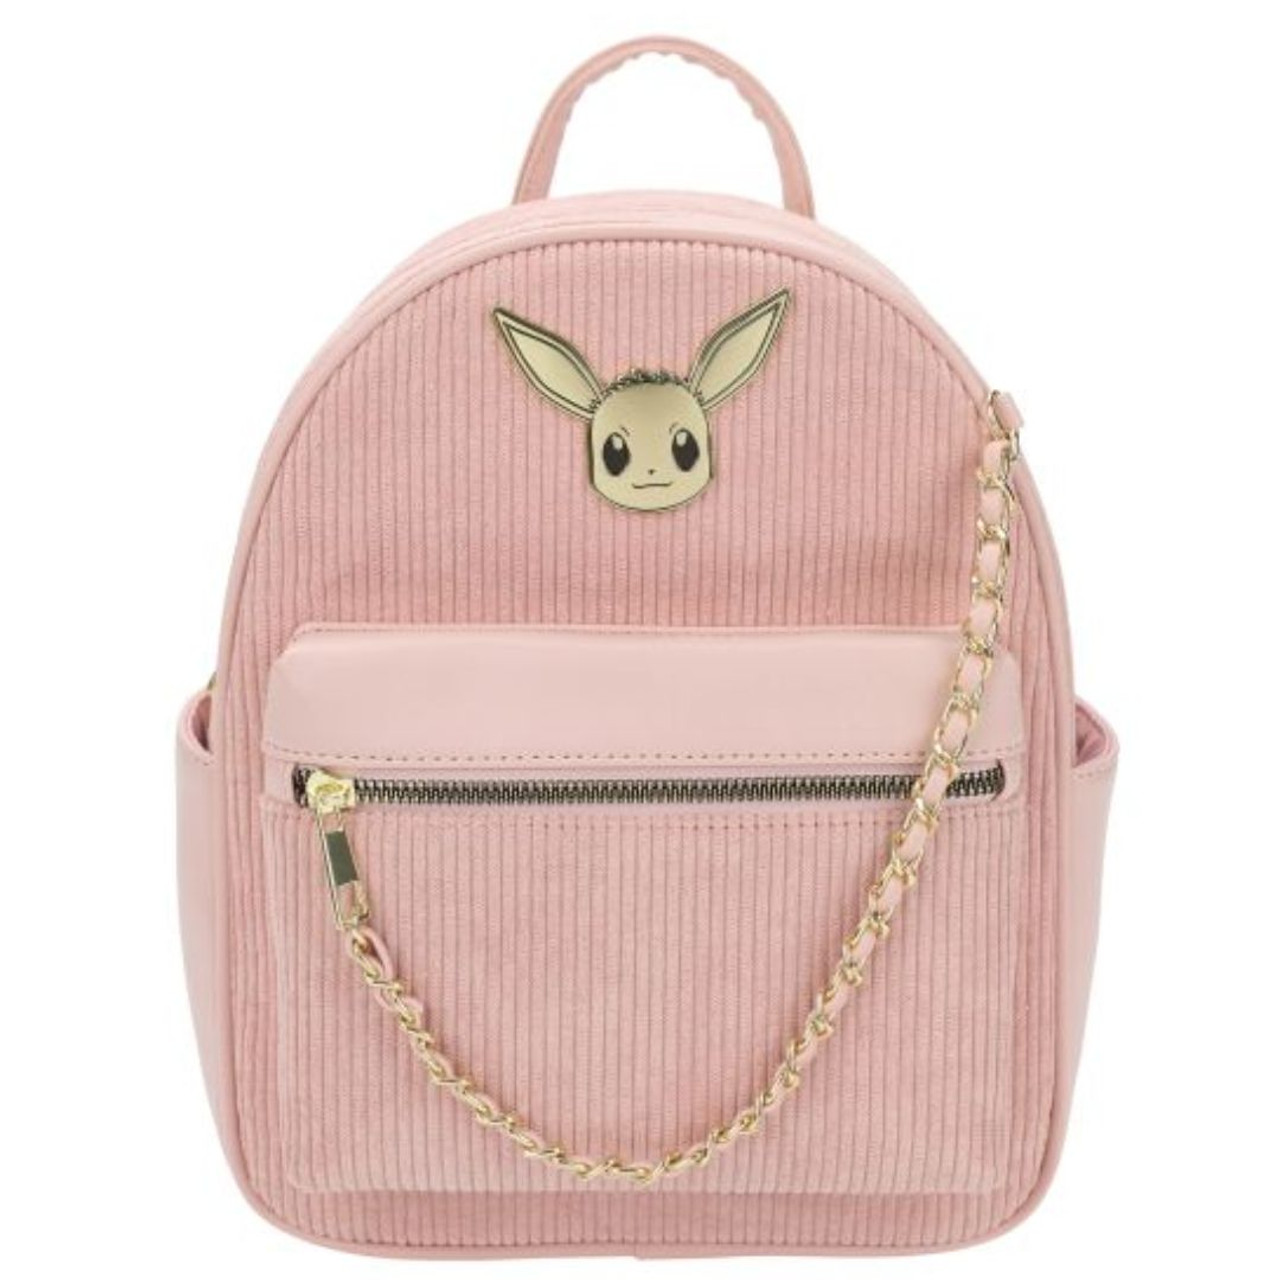 Backpacks in Pink